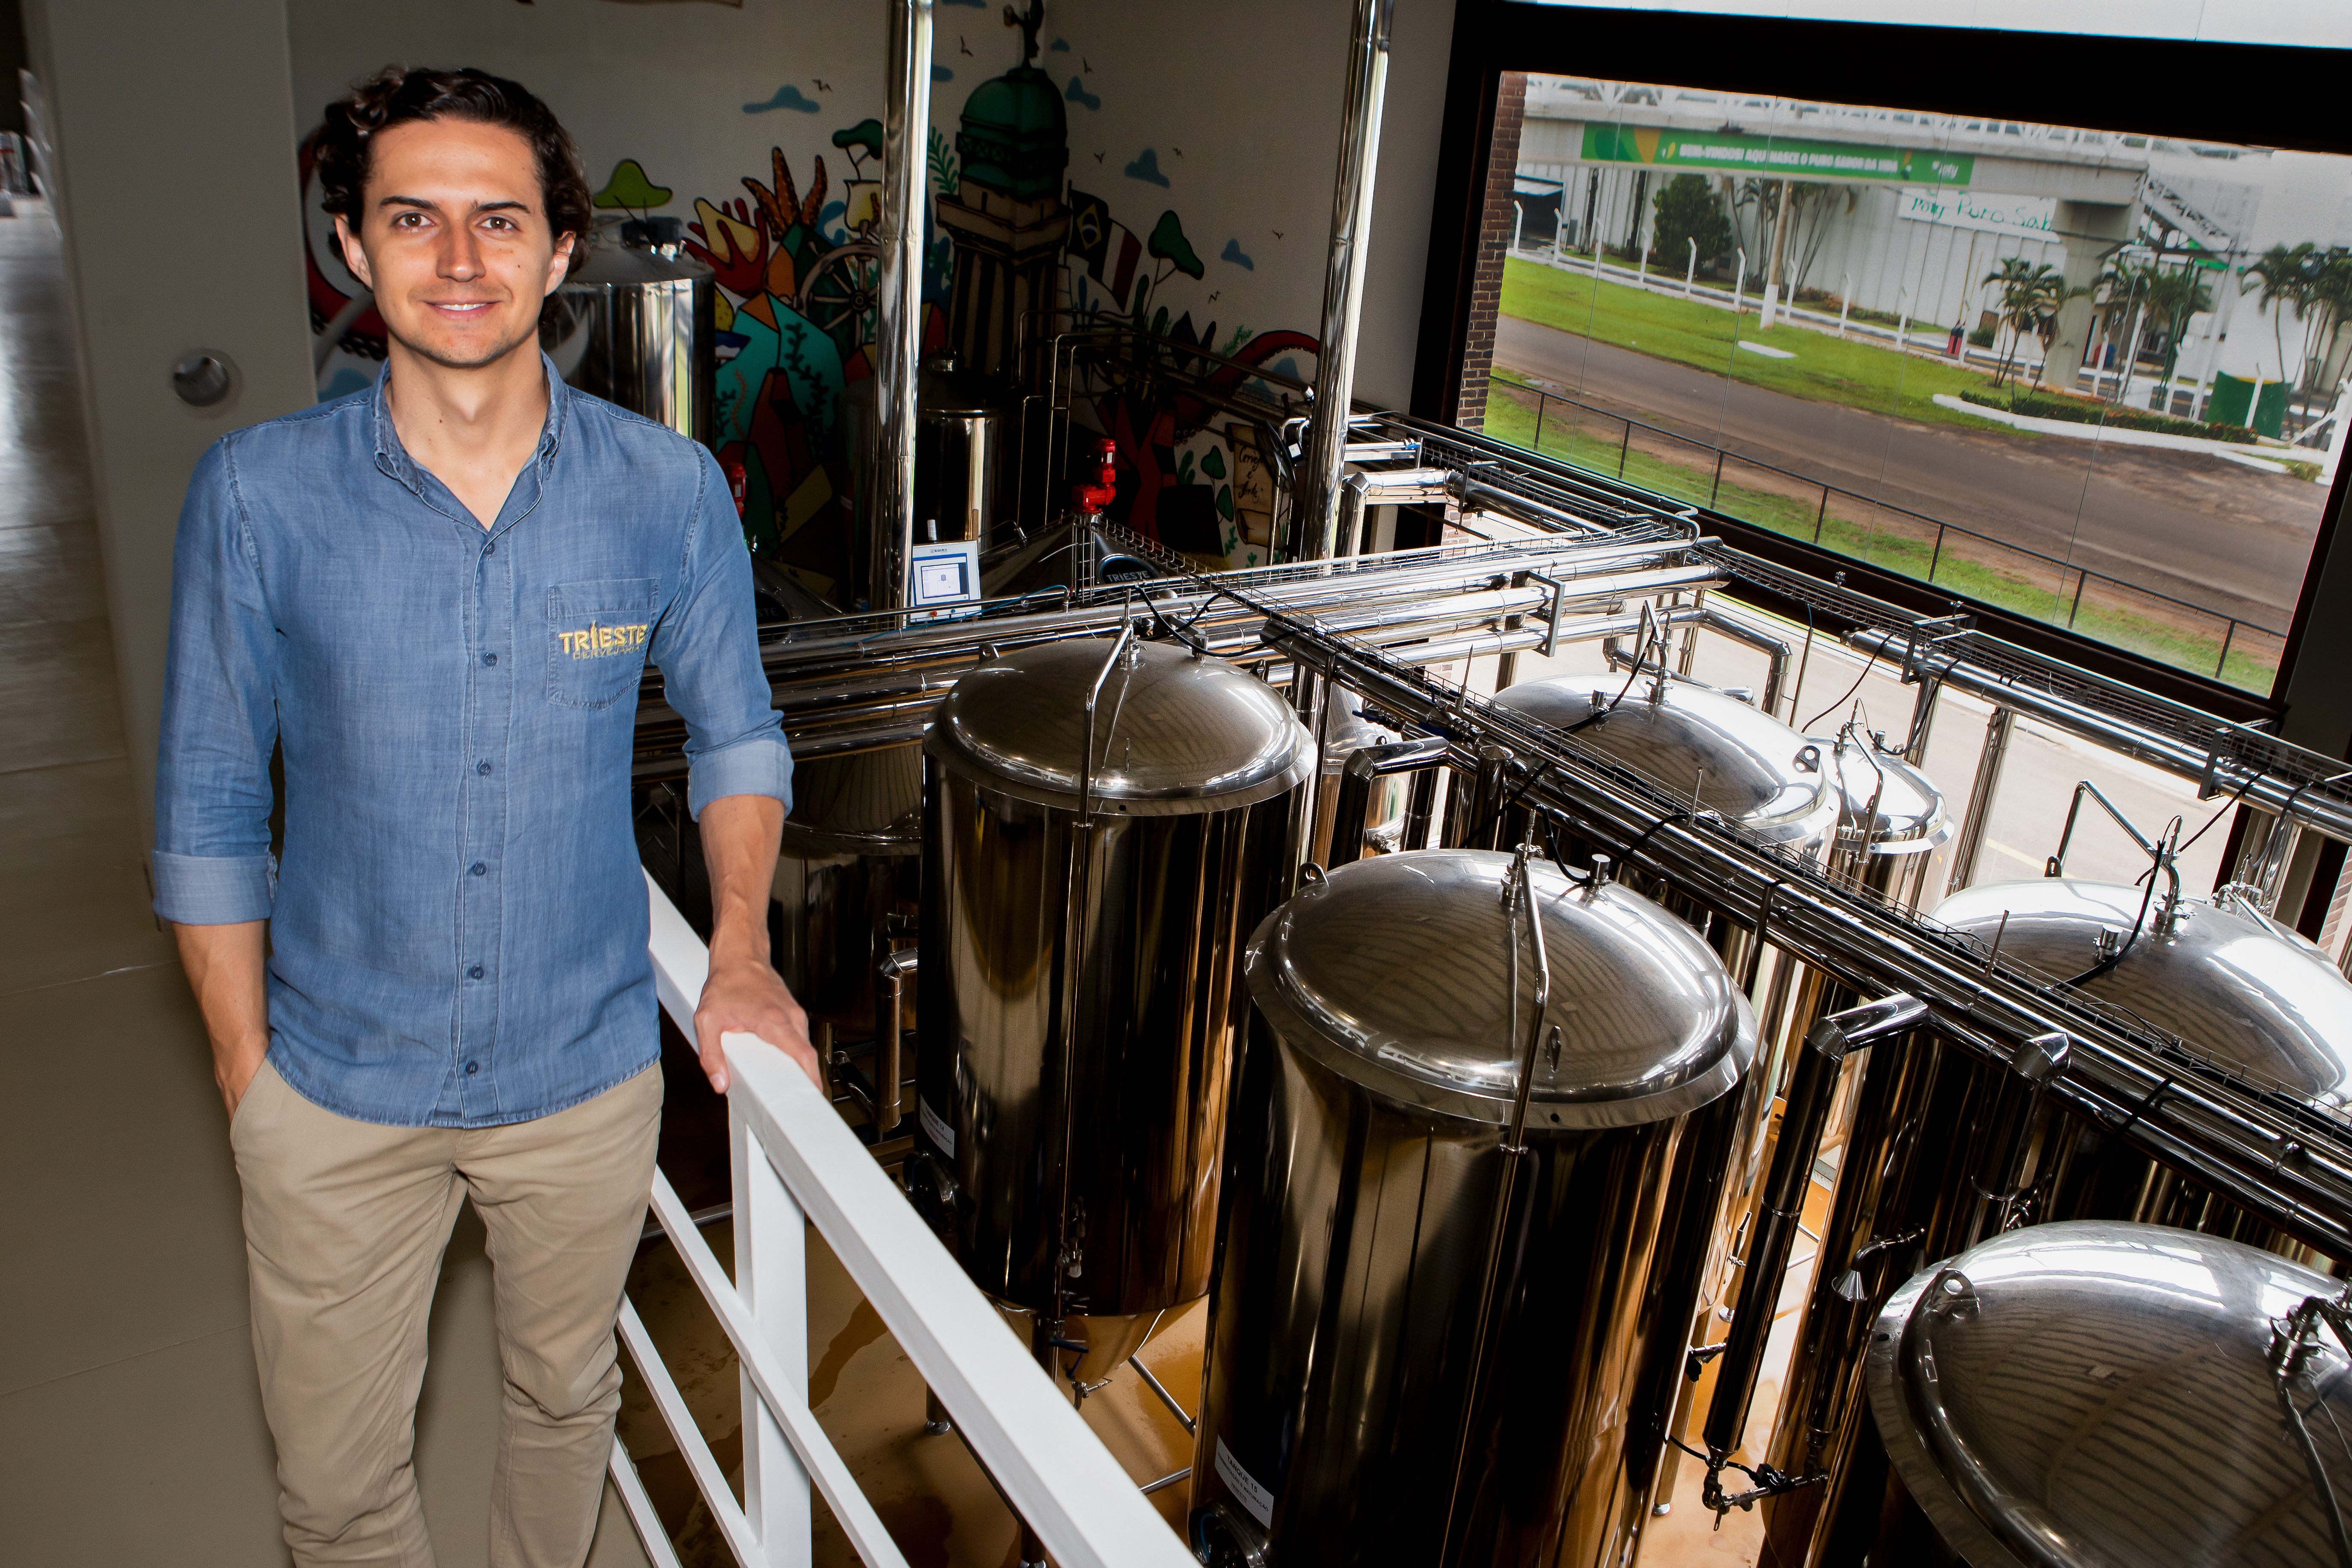 REVISTA É RIO PRETO - Luiz Sérgio Franzotti - gerente de planejamento da cervejaria Trieste